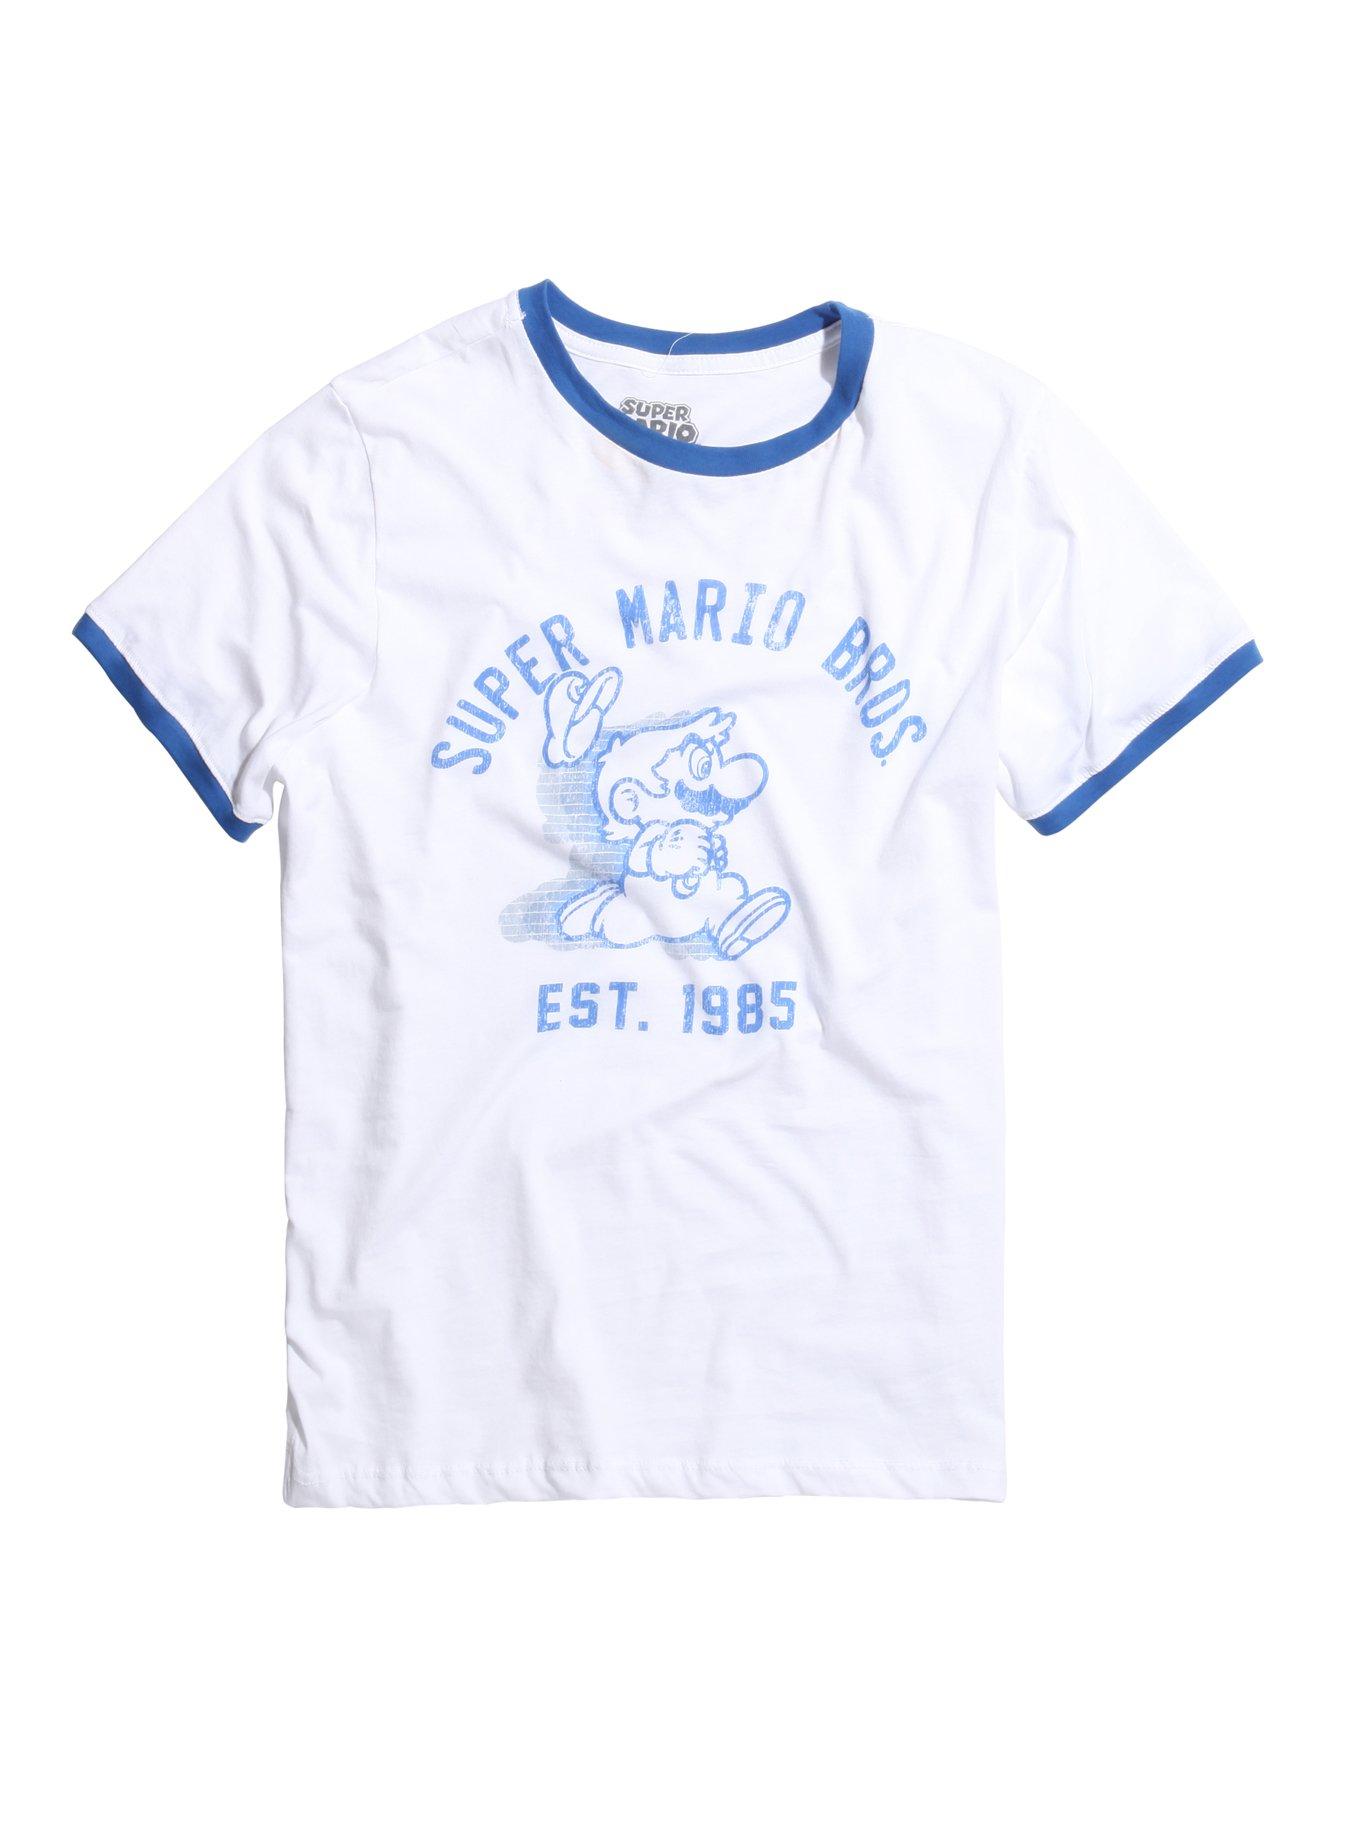 Super Mario Bros. Est. 1985 Ringer T-Shirt, WHITE, hi-res